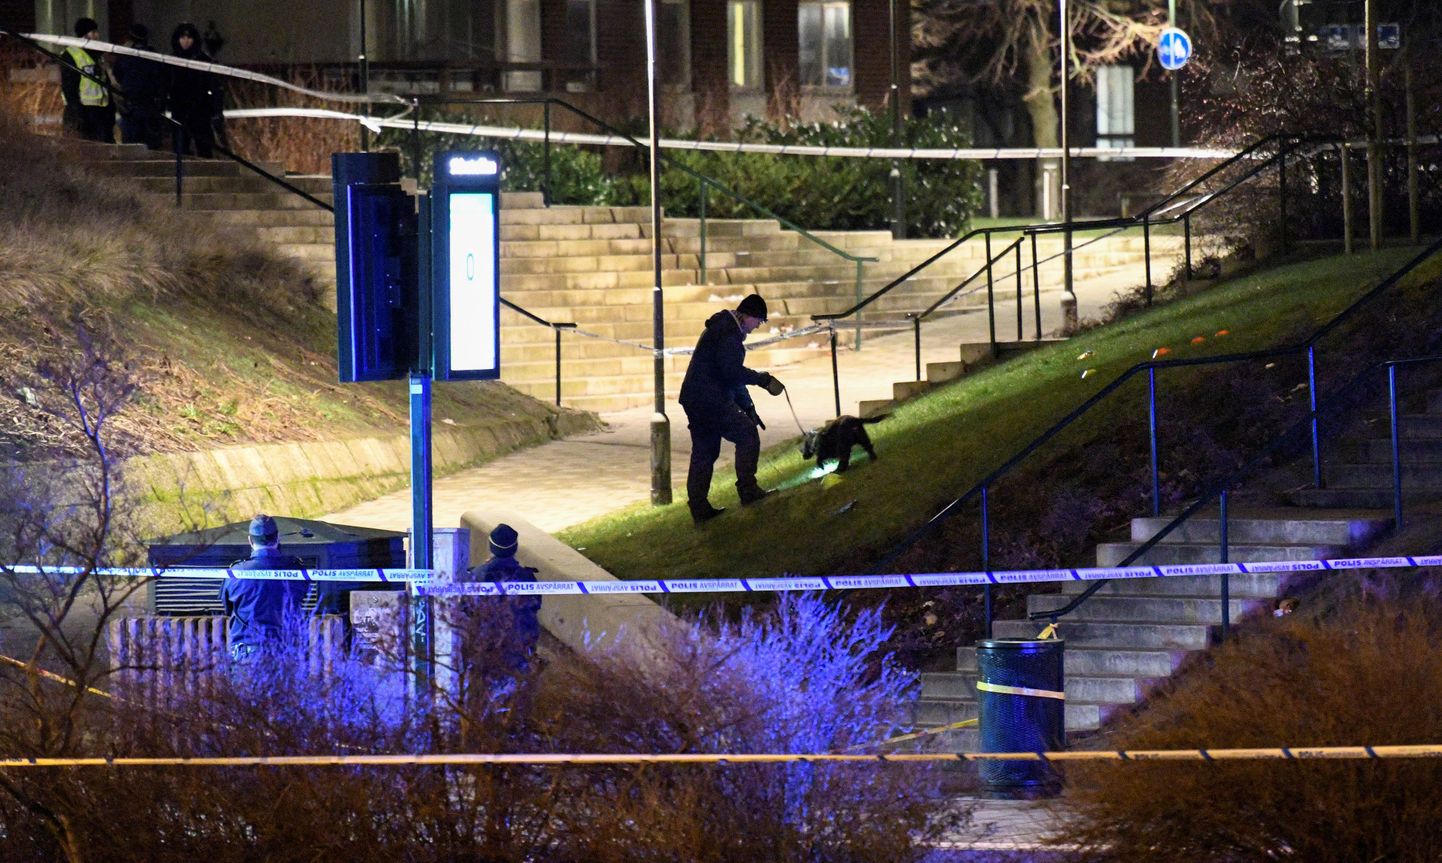 Rootsi politsei Malmö bussipeatuses jaanuaris maha lastud 16-aastase poisi mõrvapaika uurimas.